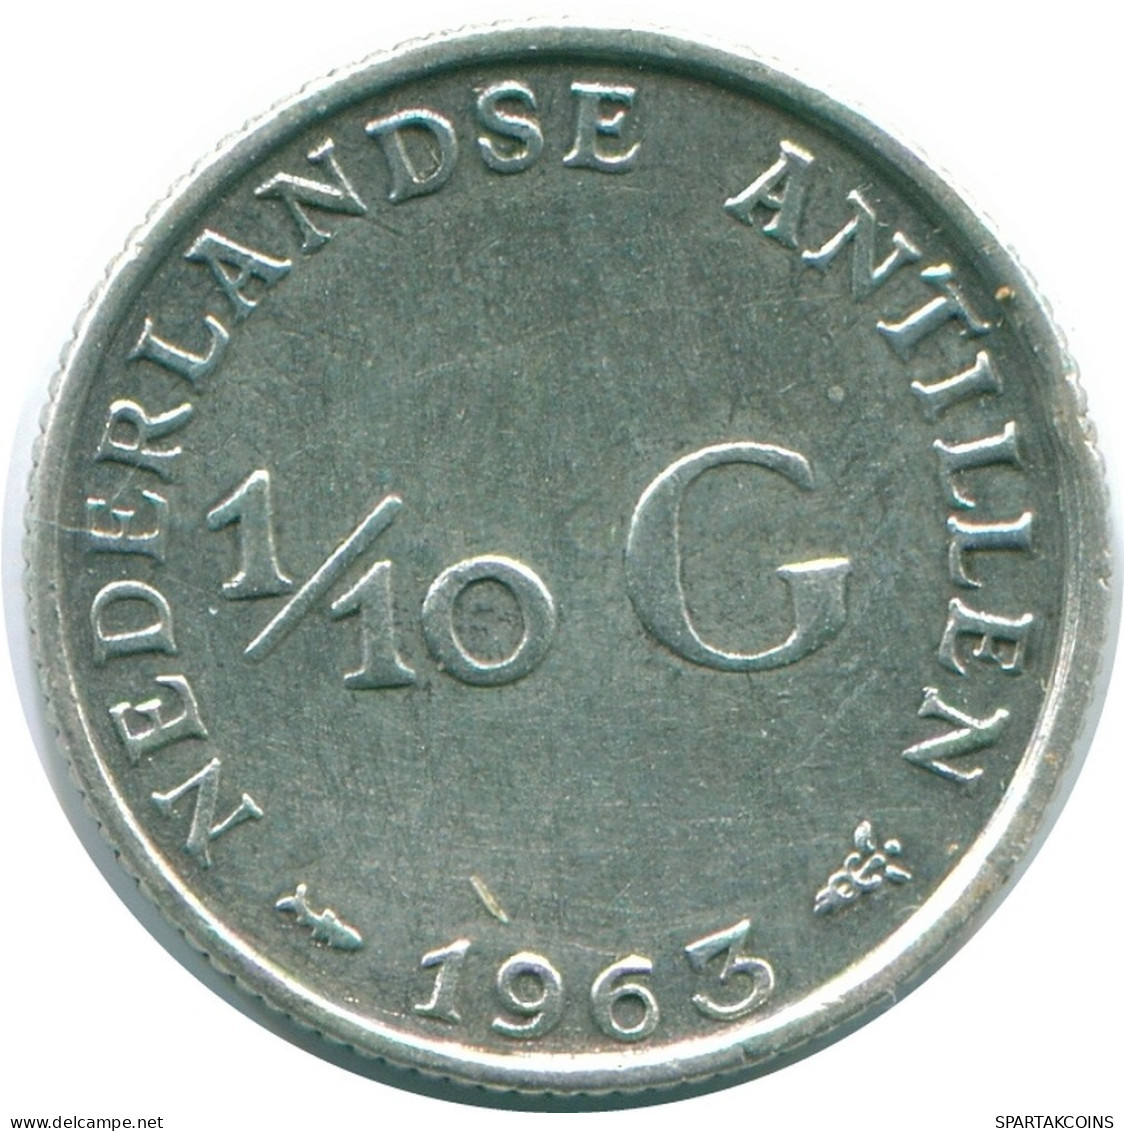 1/10 GULDEN 1963 NIEDERLÄNDISCHE ANTILLEN SILBER Koloniale Münze #NL12468.3.D.A - Niederländische Antillen